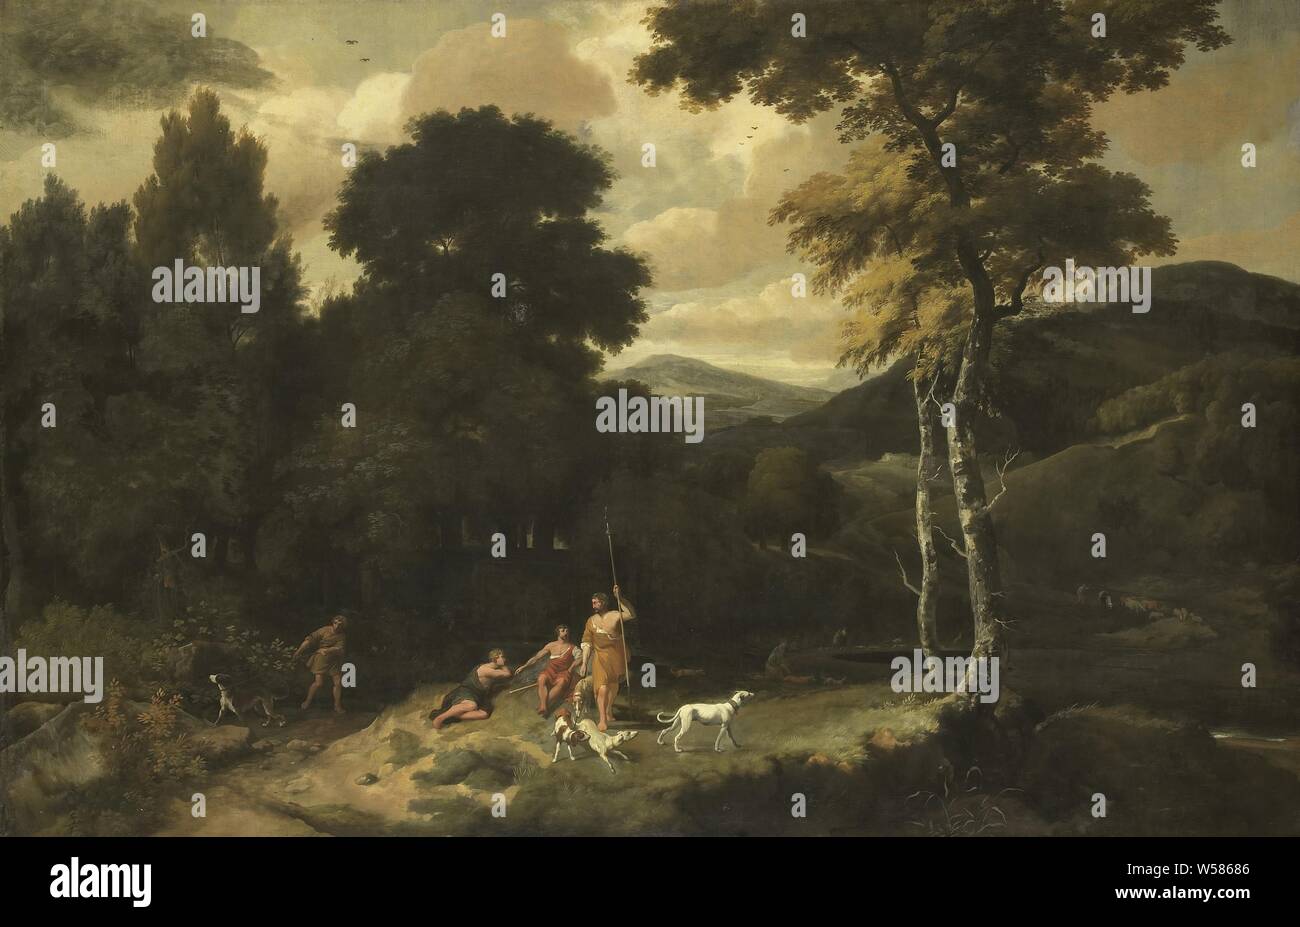 Paysage avec les chasseurs, avec des paysages forestiers certains chasseurs avec des chiens au premier plan, les chasseurs se reposer pendant la chasse, scènes pastorales, Arcadian, Jacob Esselens (mentionné sur l'objet), 1660 - 1687, la toile, la peinture à l'huile (peinture), h 103 cm × w 158 cm d 10 cm Banque D'Images